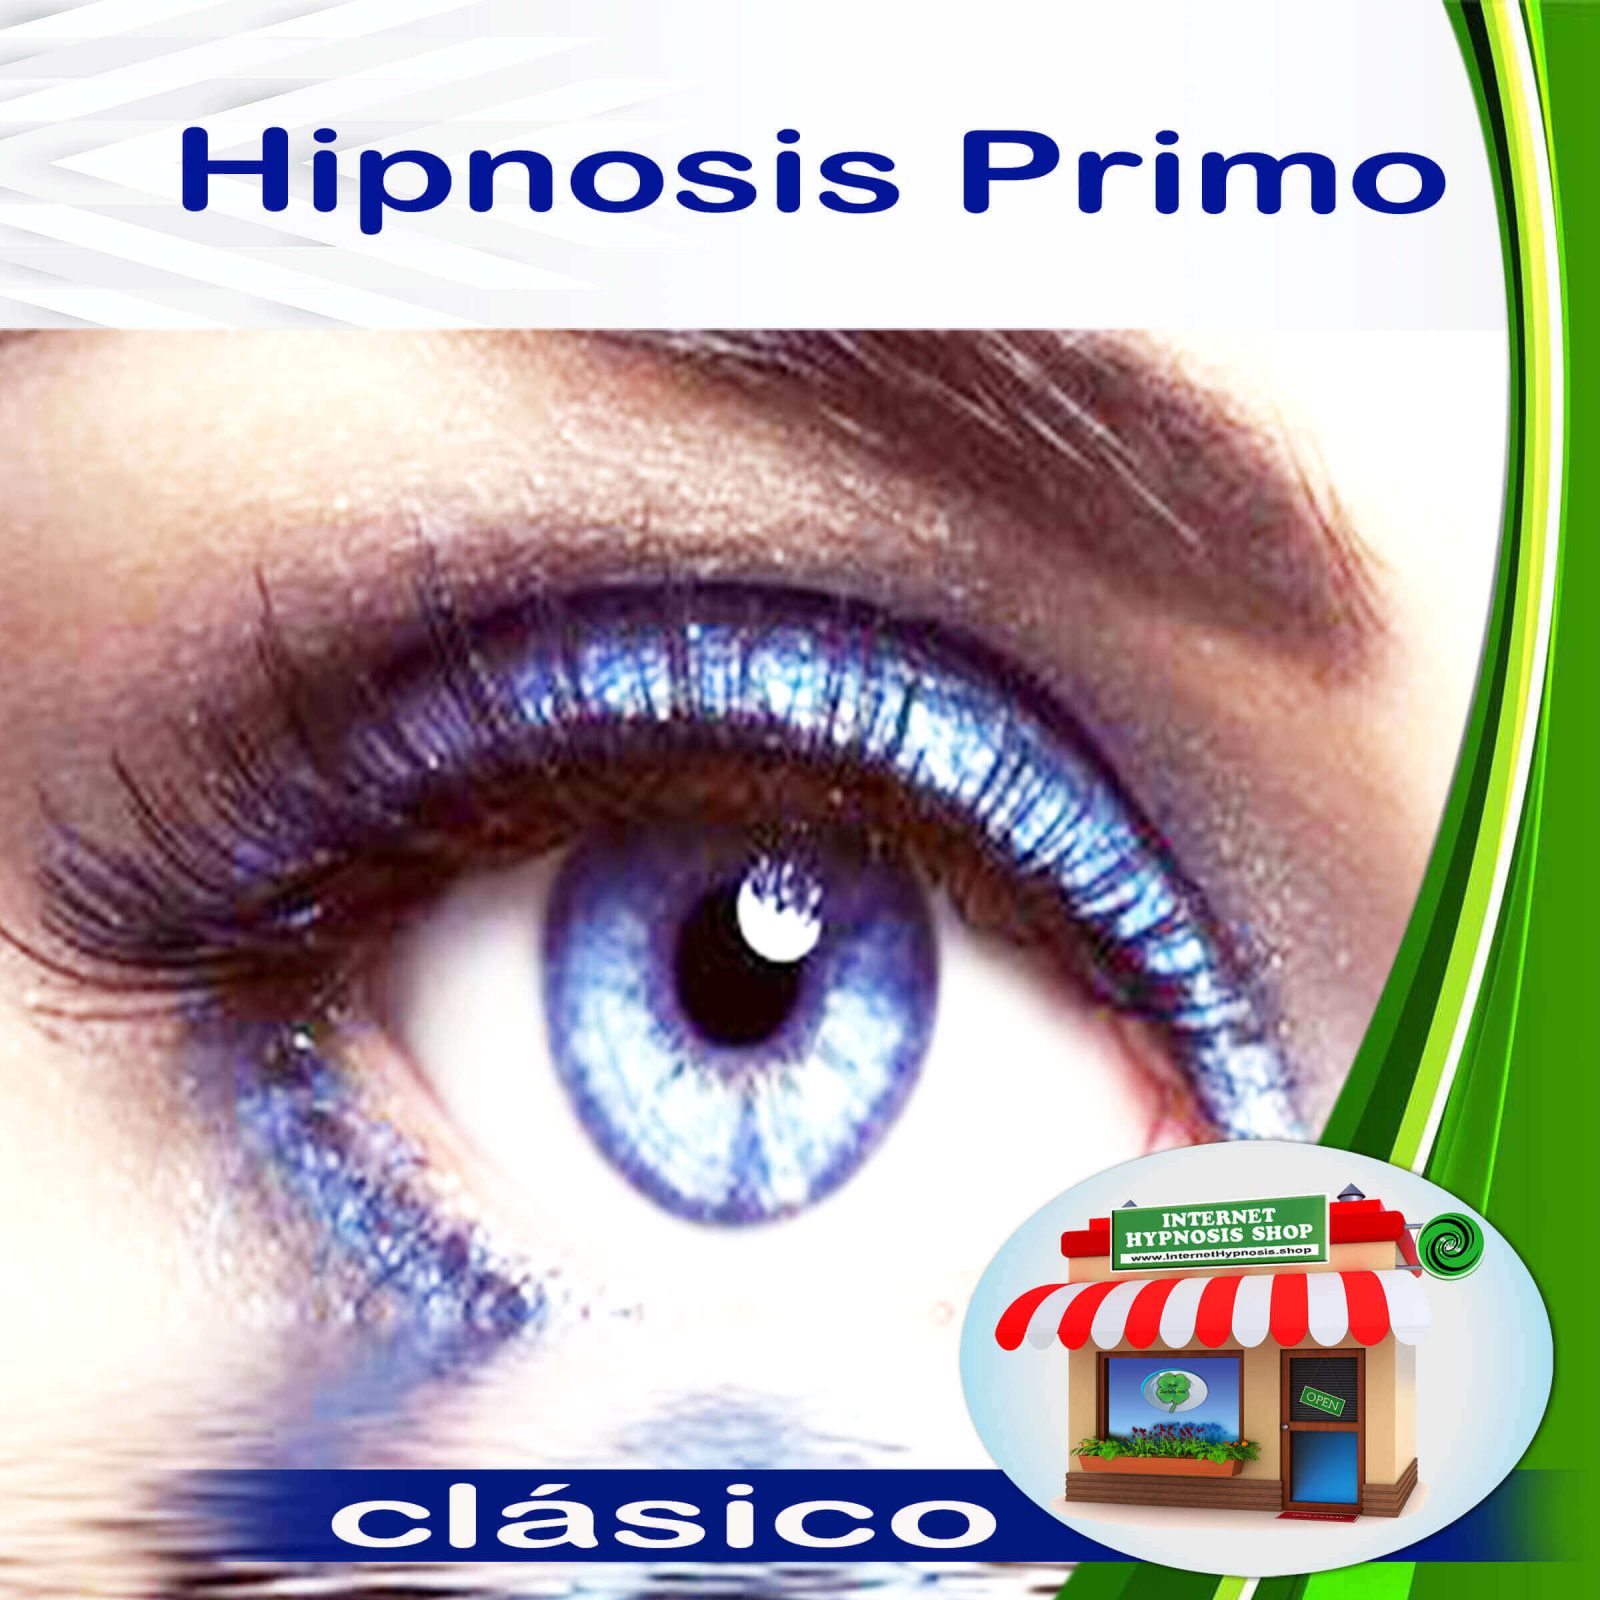 Spanish Prime Hypnosis, Hipnosis Primo